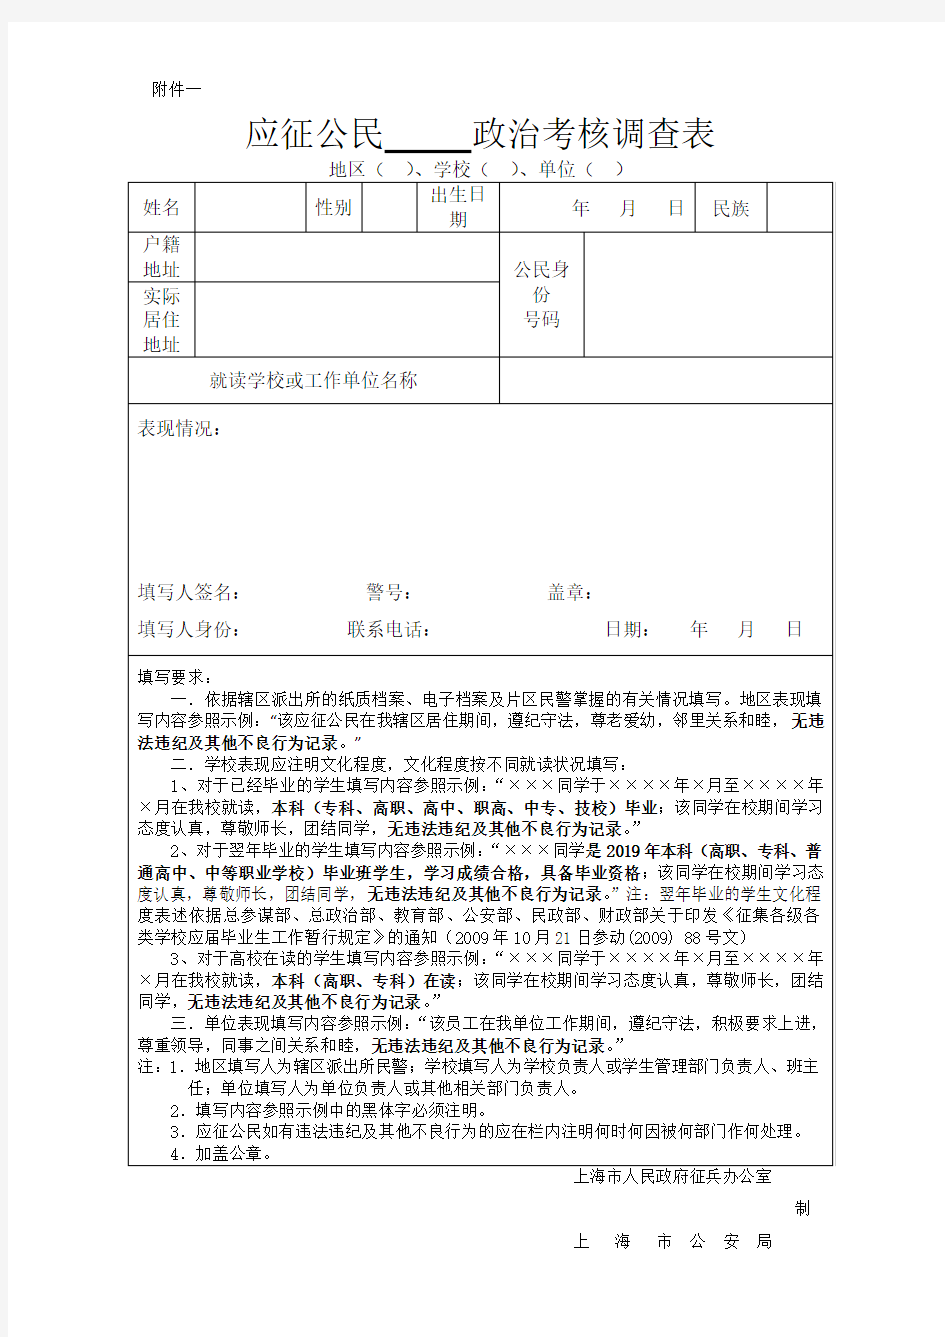 应征公民政治考核调查表上海